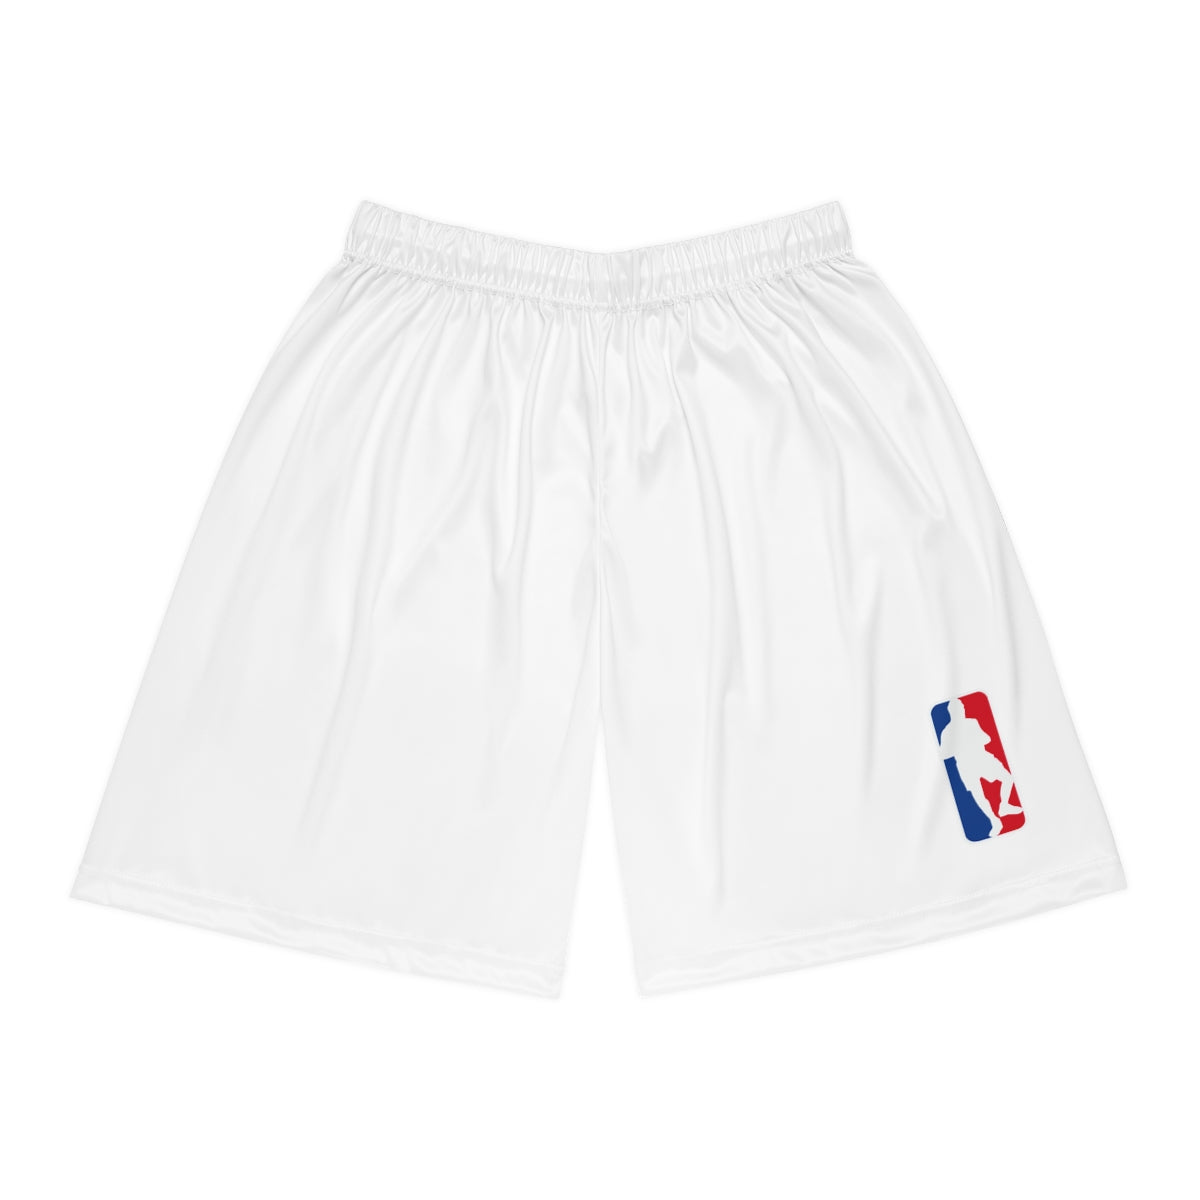 Max NBA Logo Basketball Shorts